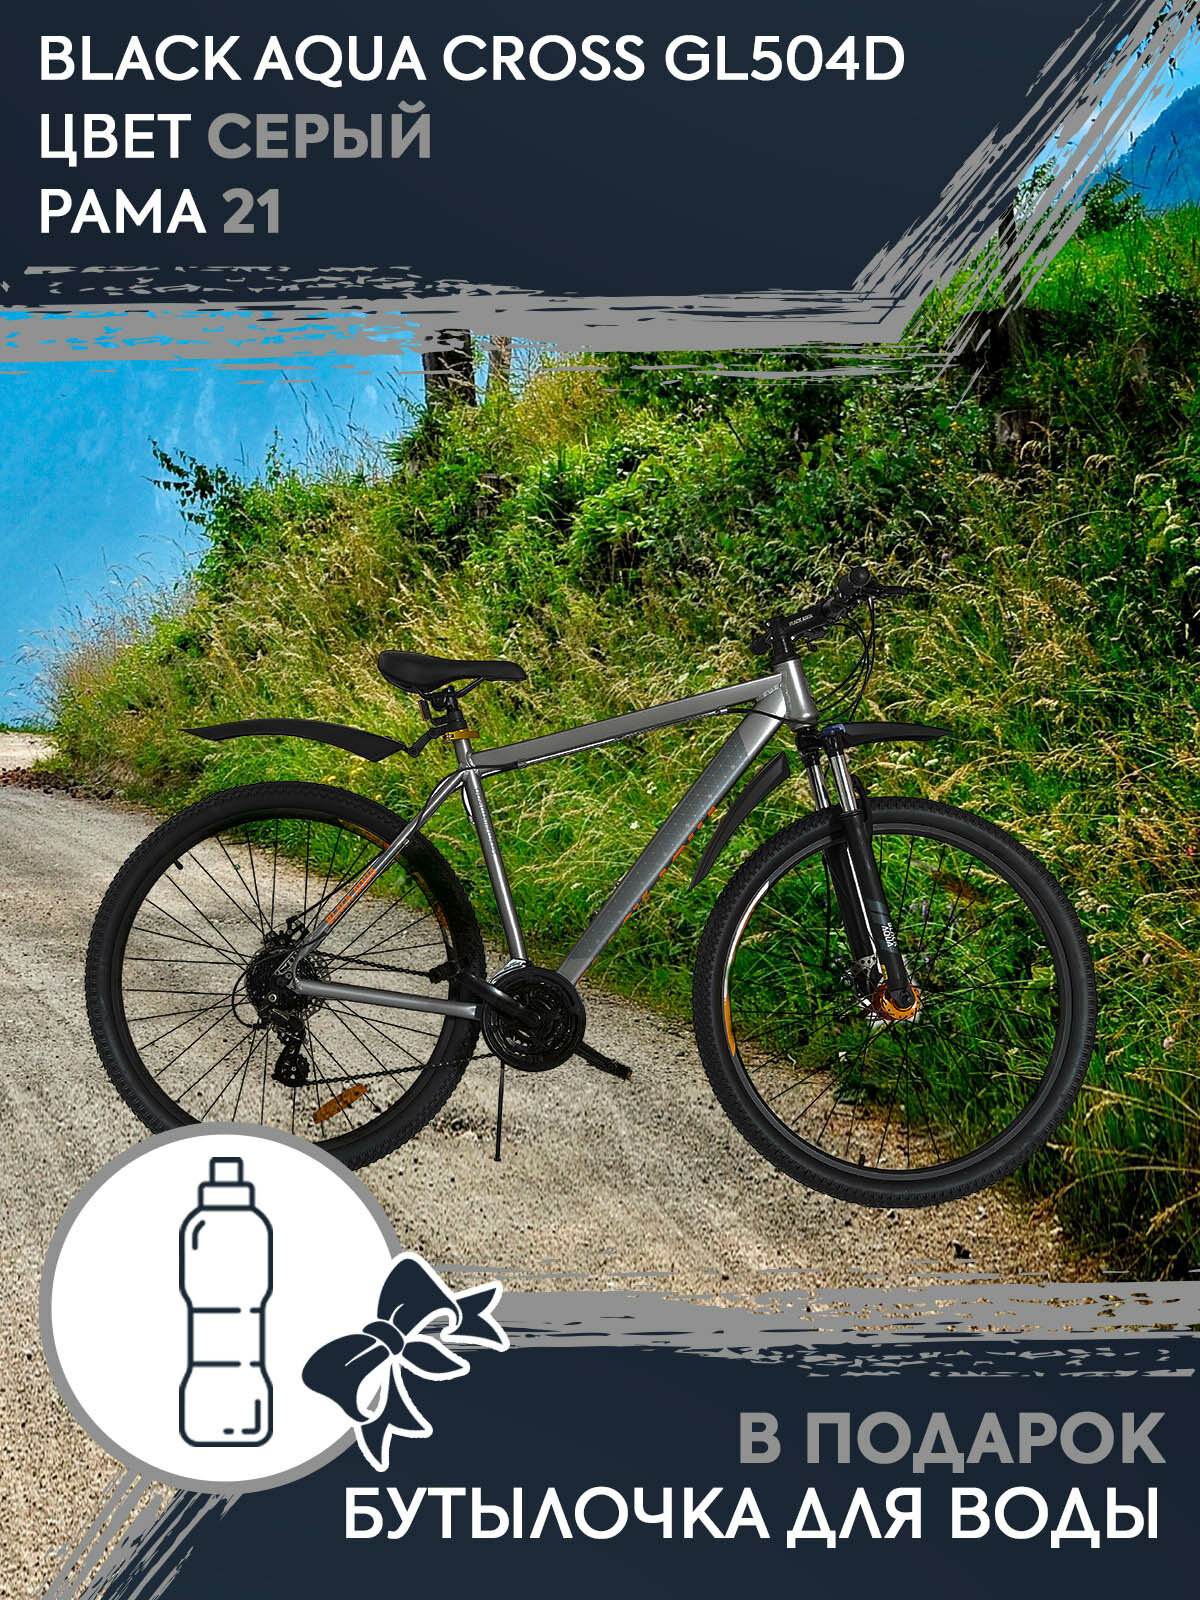 Горный спортивный городской взрослый мужской женский велосипед Black Aqua Cross GL-504D 2992 на 29 колесах 21 рама с подарком